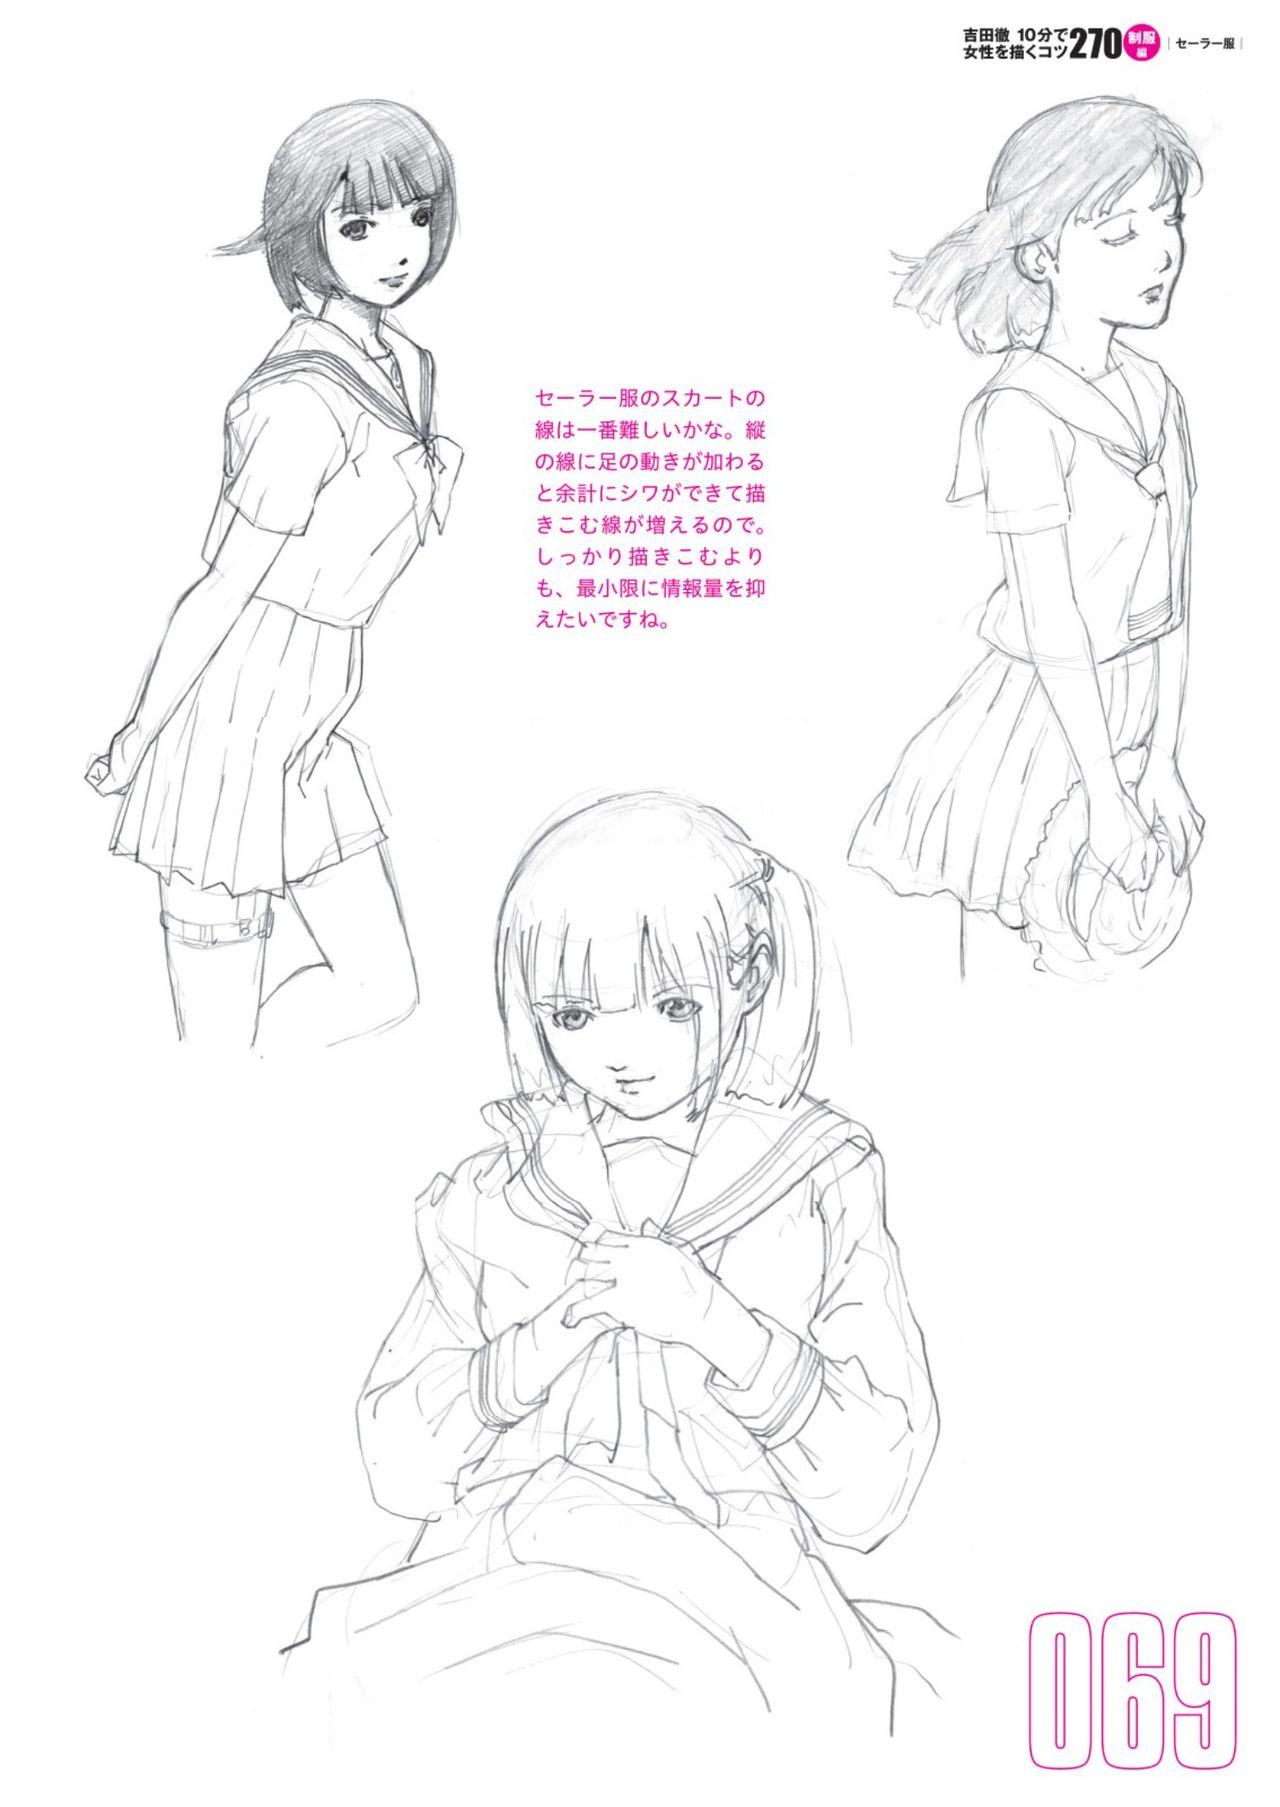 Toru Yoshida Tips for drawing women in 10 minutes 270 Uniforms 70